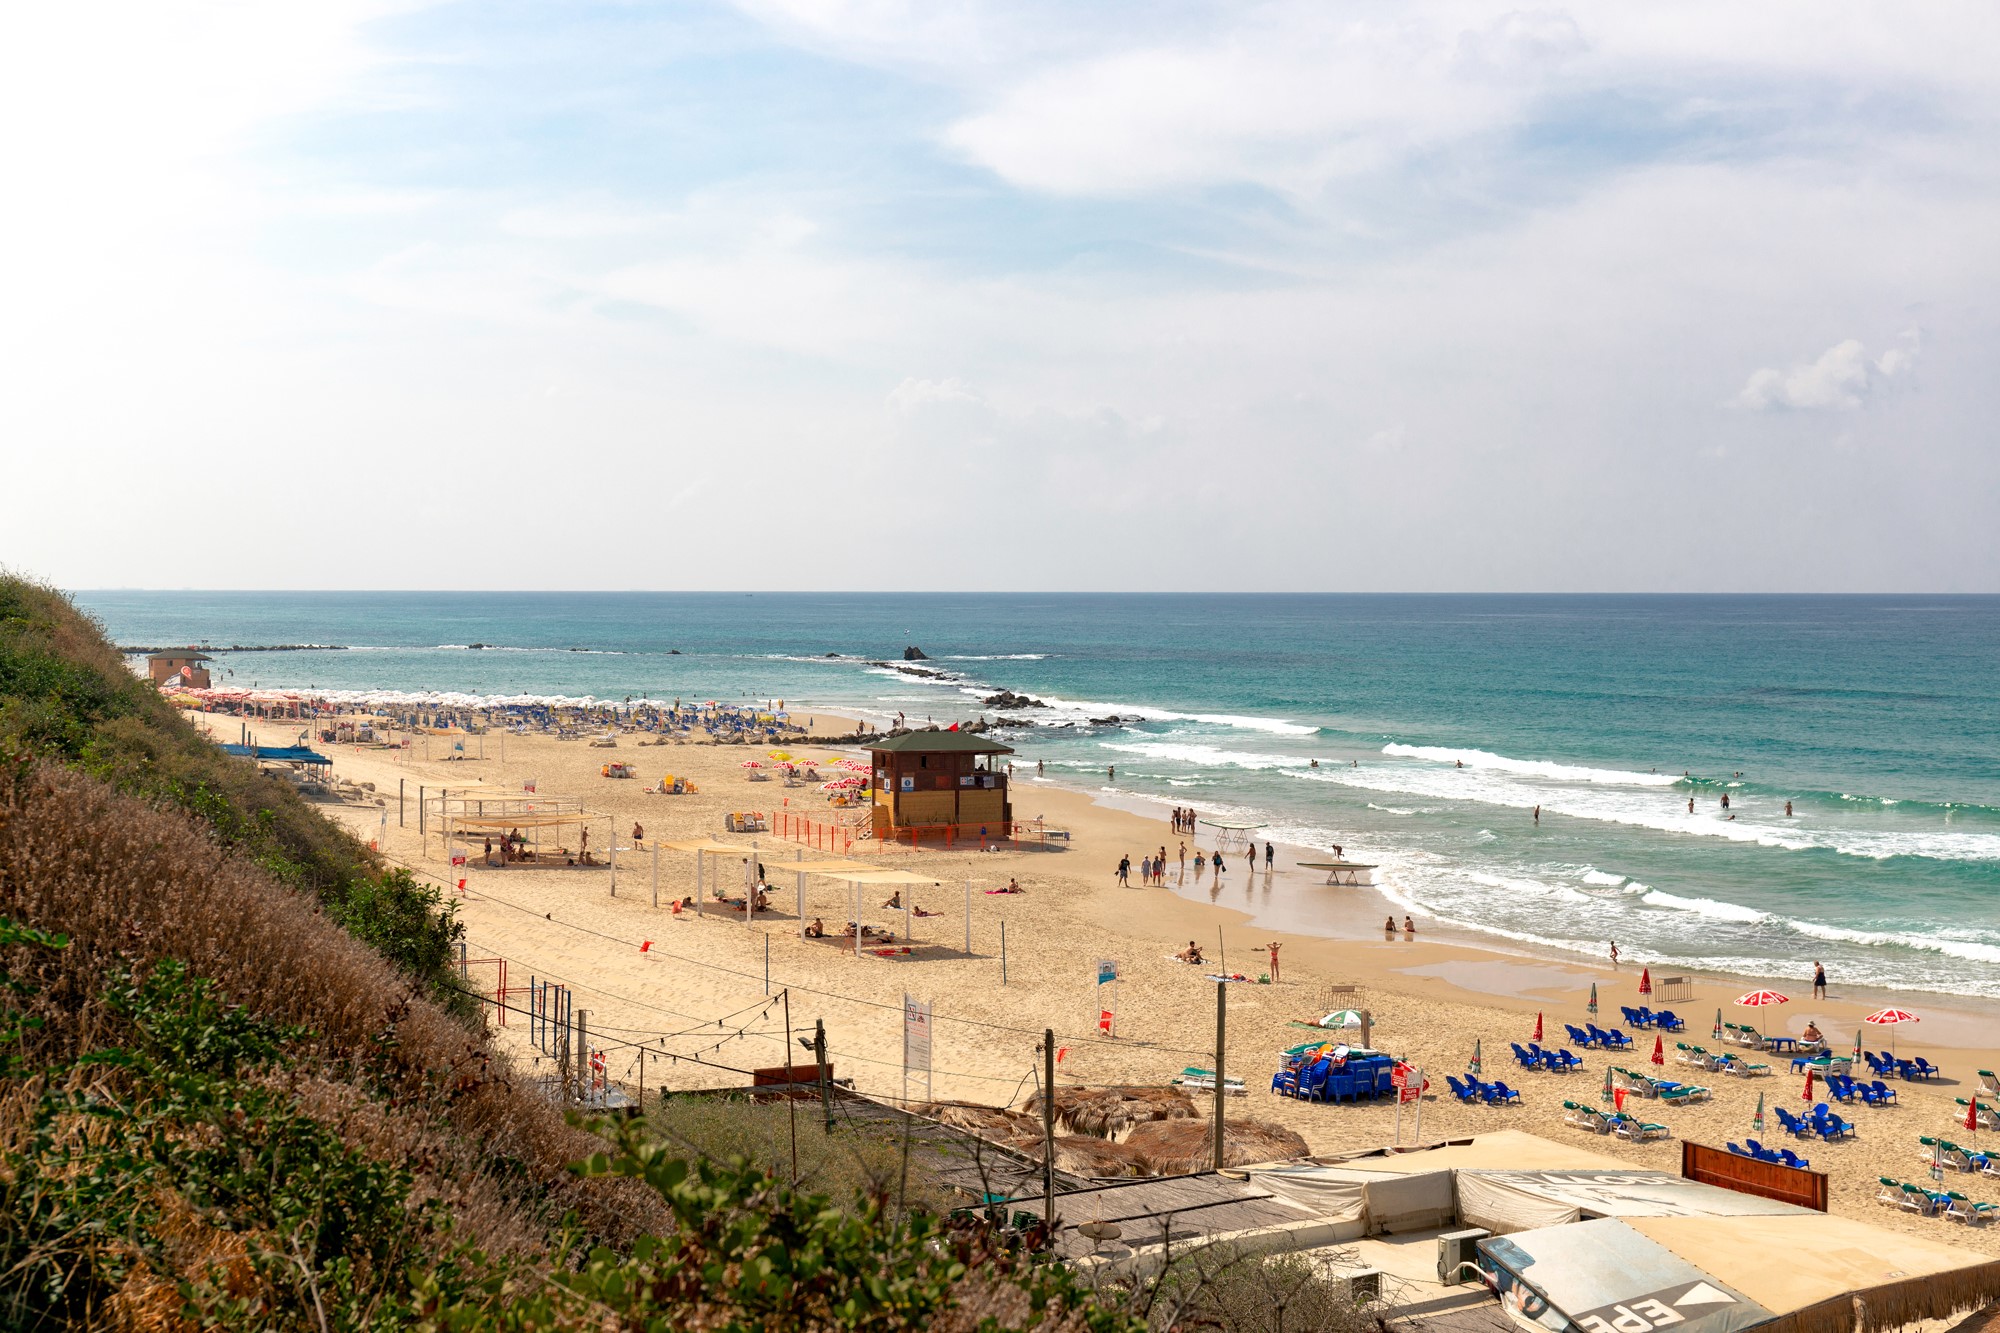 מדד "חוף נקי" של המשרד להגנת הסביבה: חוף בת-ים הוא הנקי בישראל